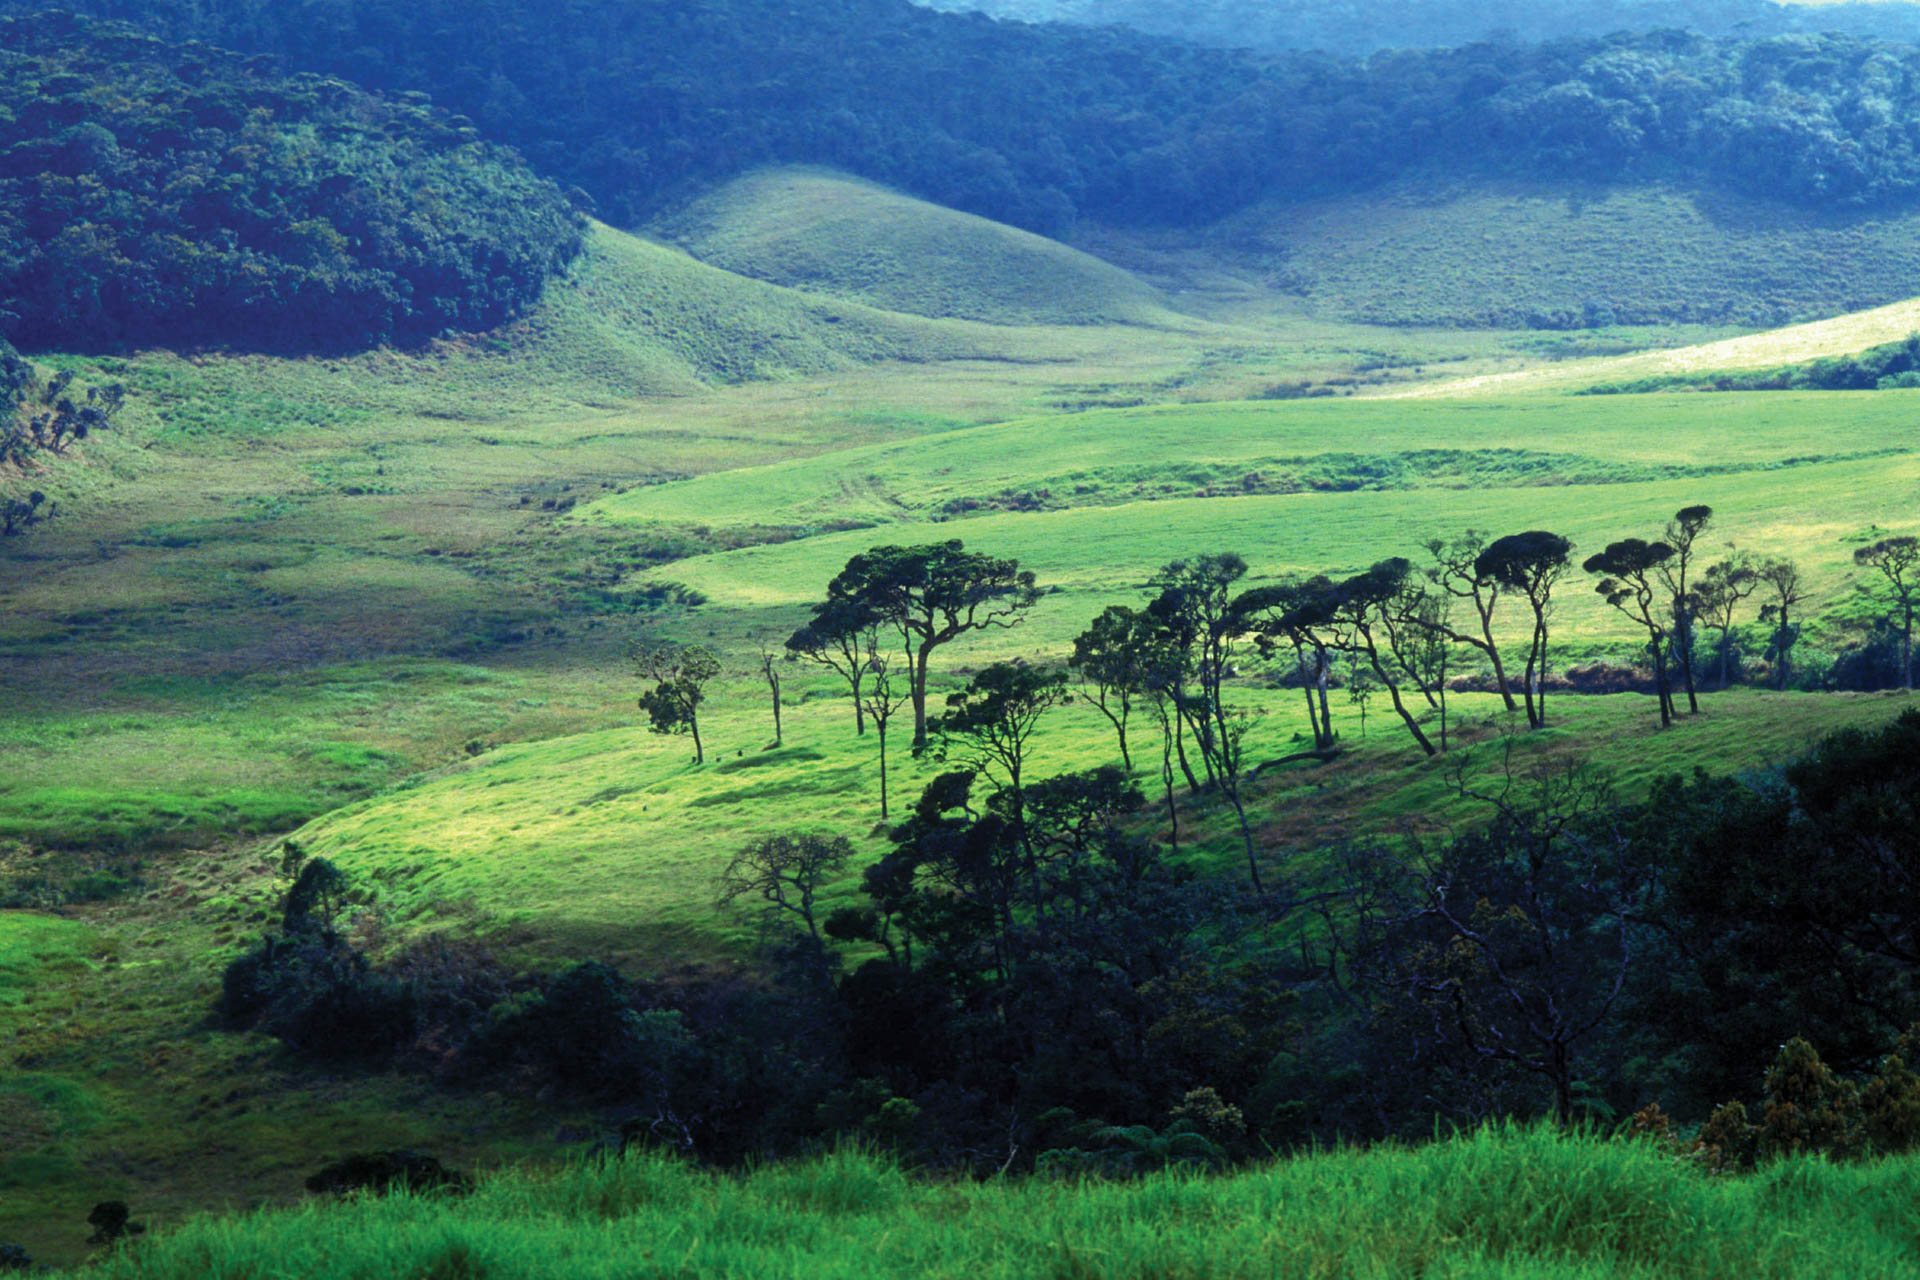 Resort i Sri Lanka, landskab og vegetation i forskellige grønne nuancer